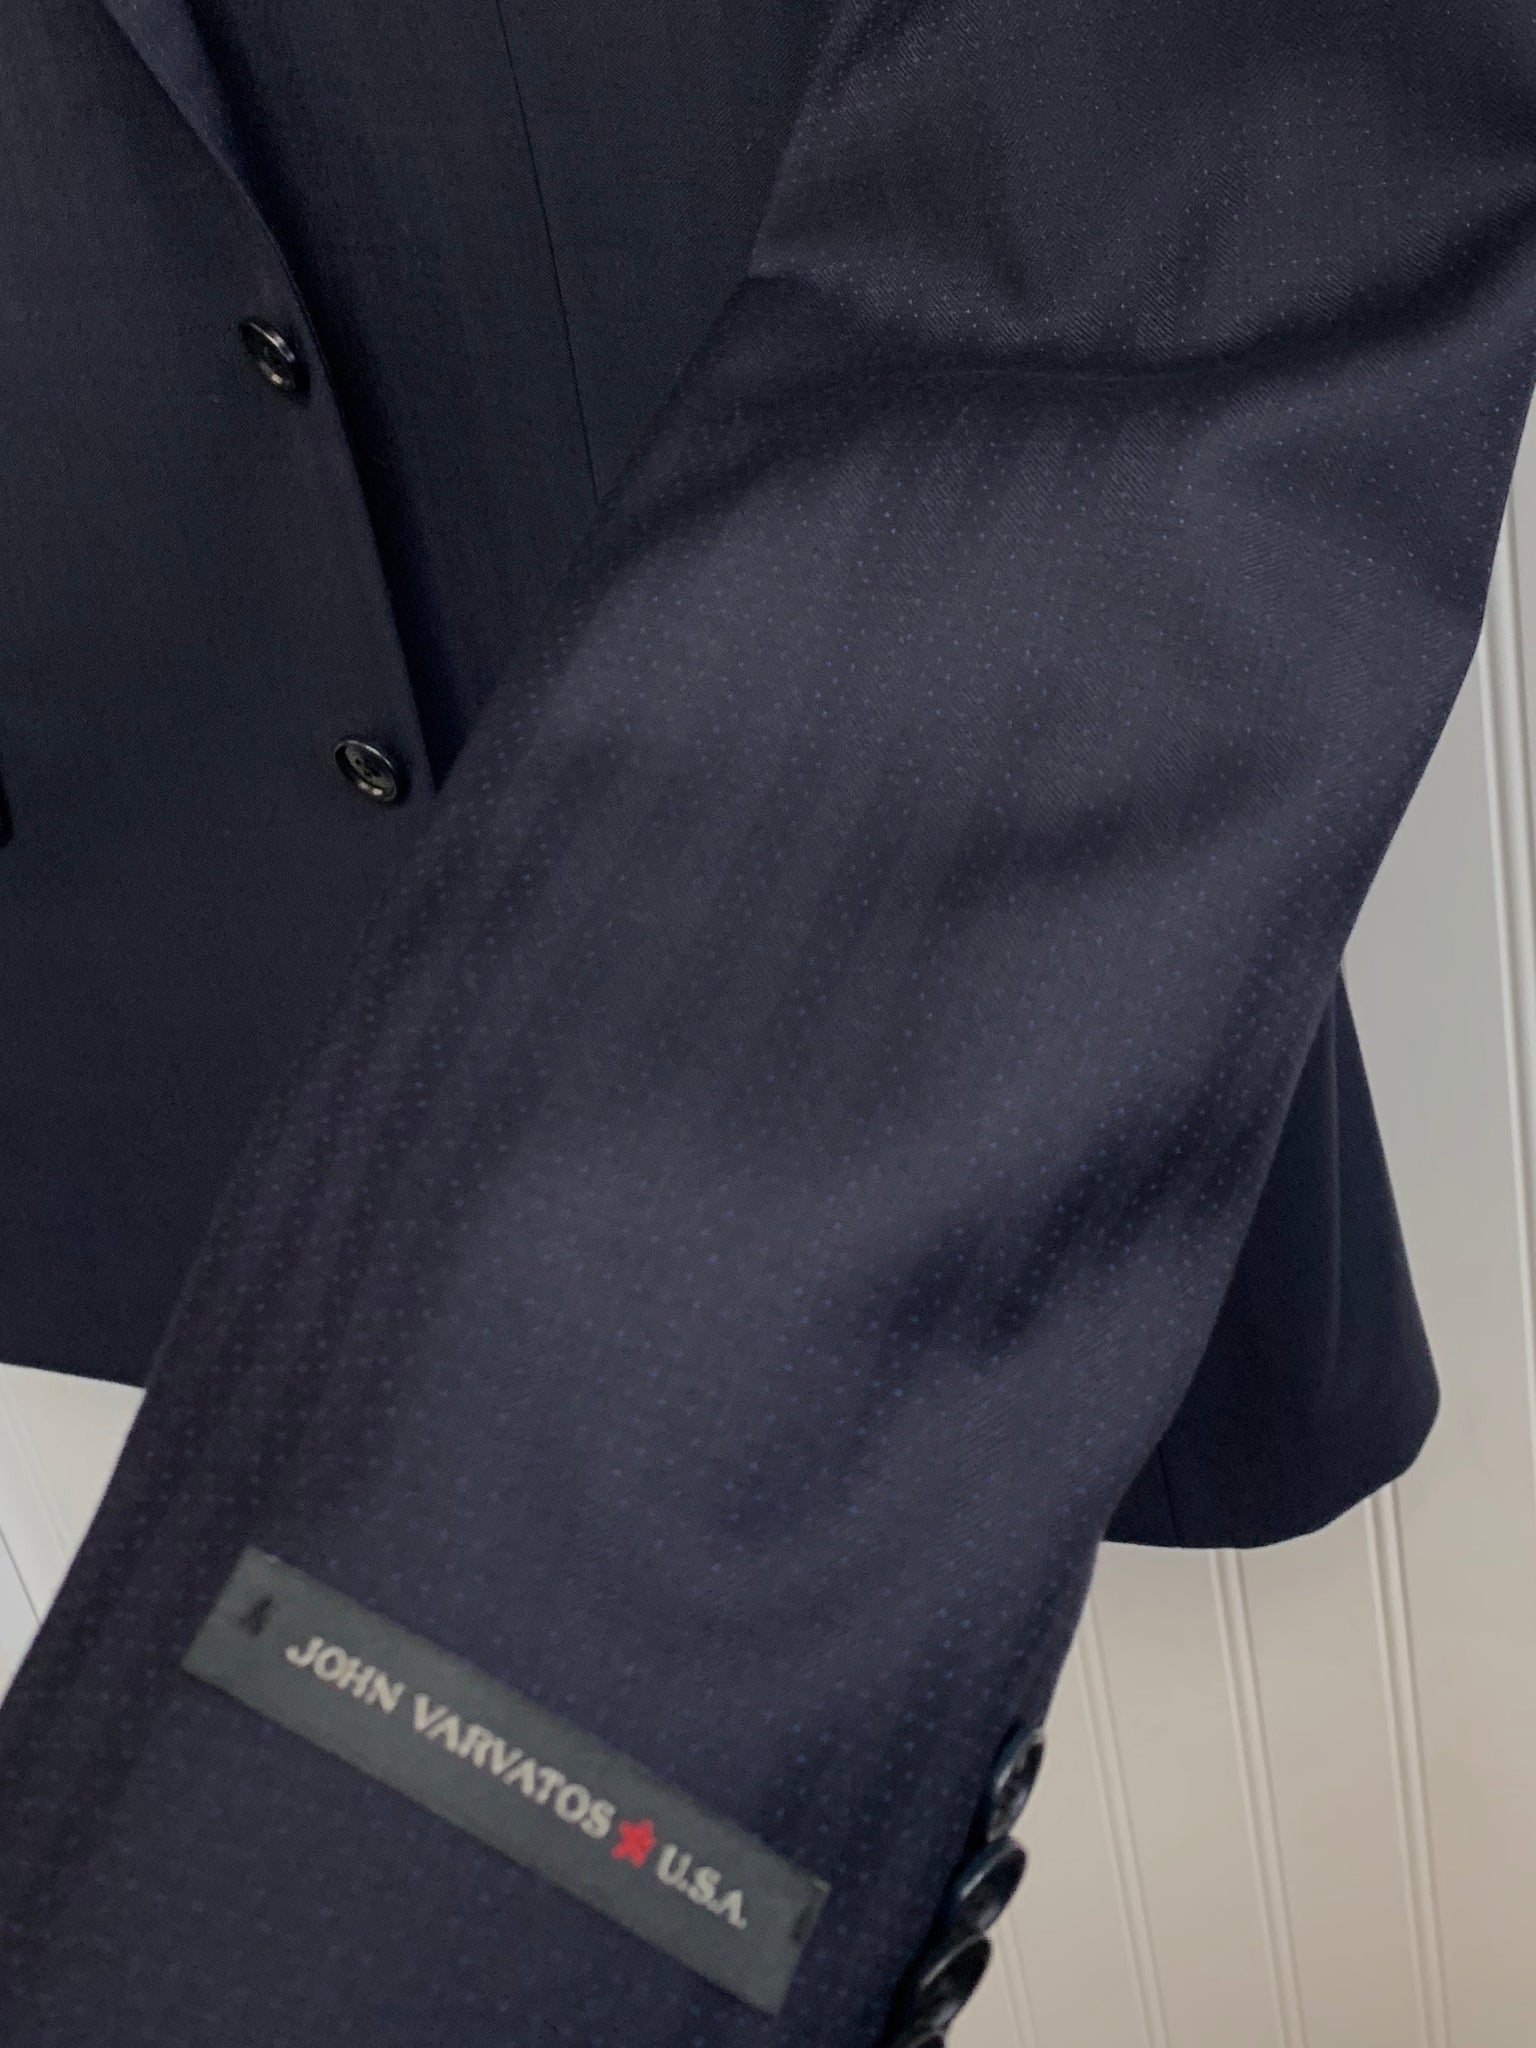 Ermenegildo Zegna Wool Suit Z33562 - (Navy Tonal Herringbone Stripe)